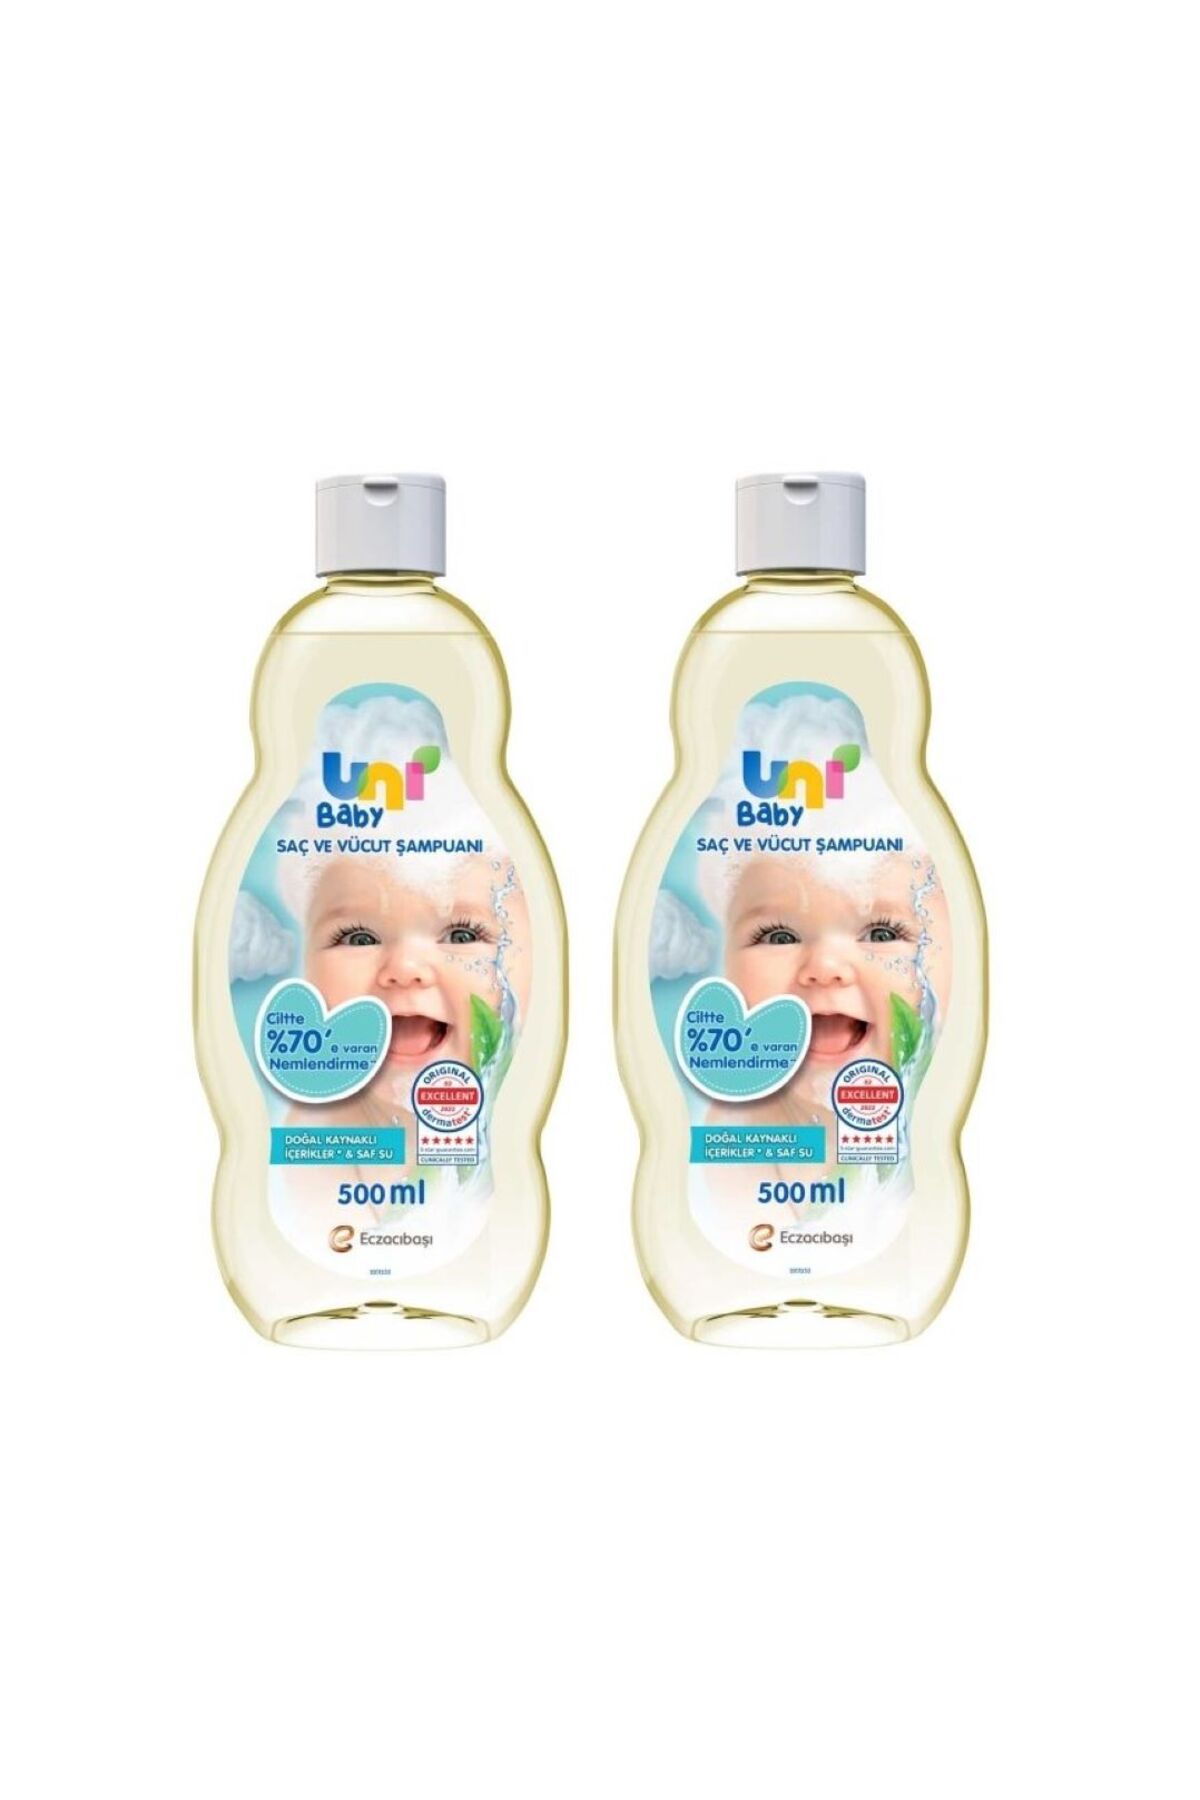 Eczacıbaşı Uni Baby Saç ve Vücut Şampuan 500 ml 2 Adet